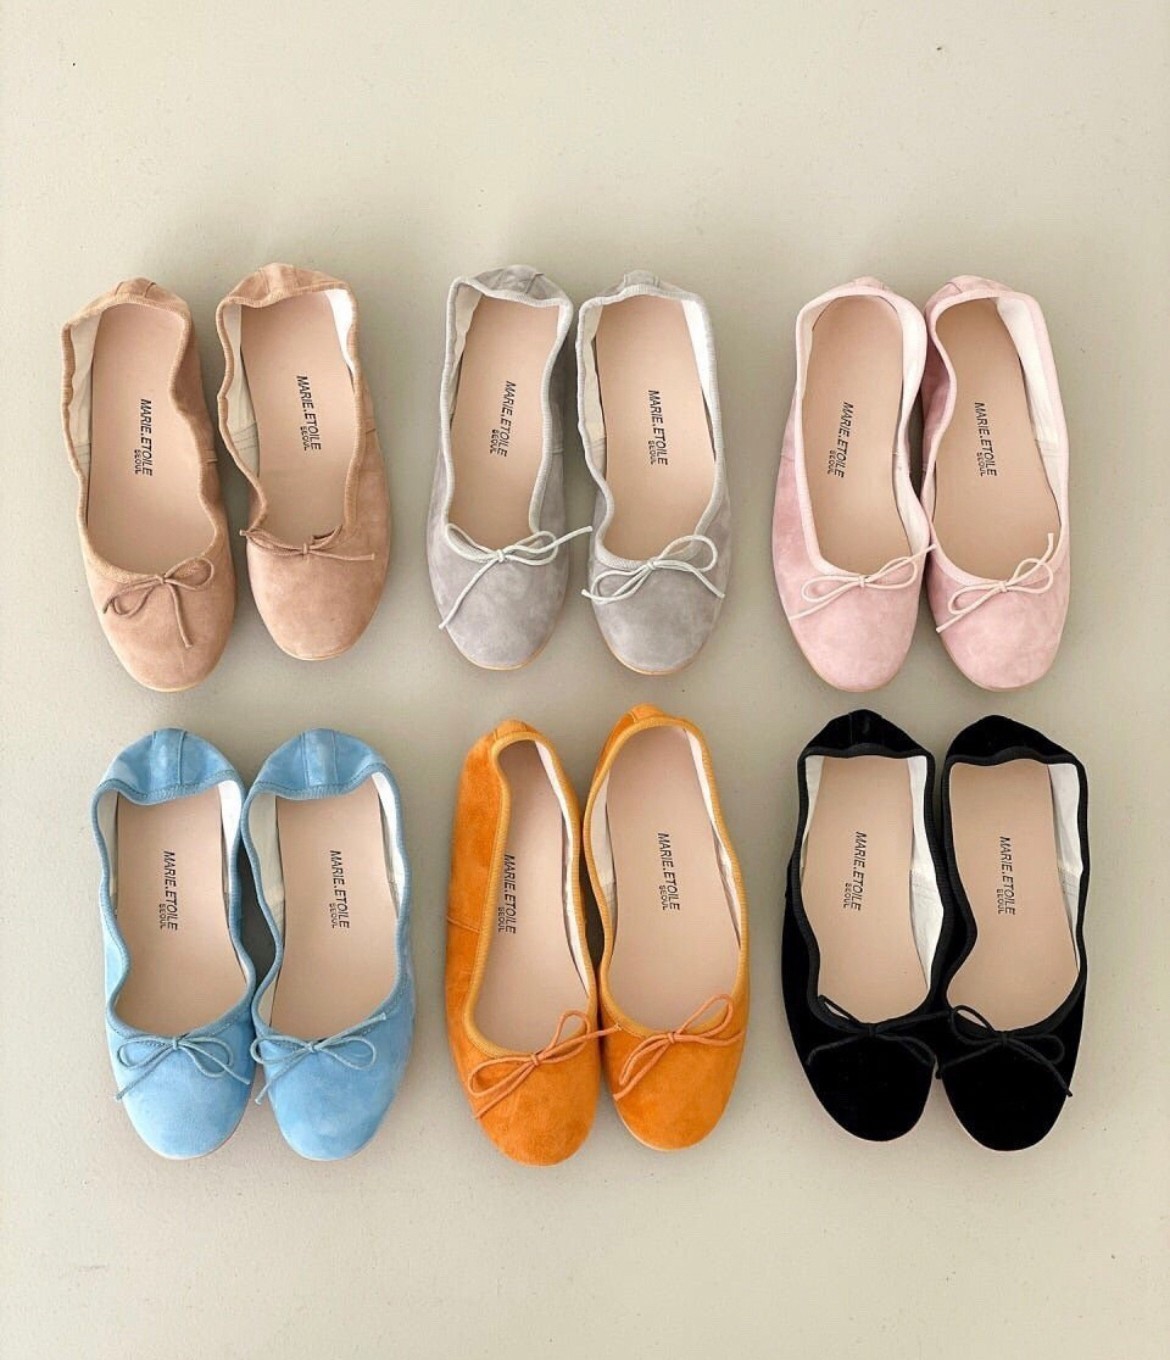 芭蕾娃娃鞋1公分 6色 SIZE 230-250